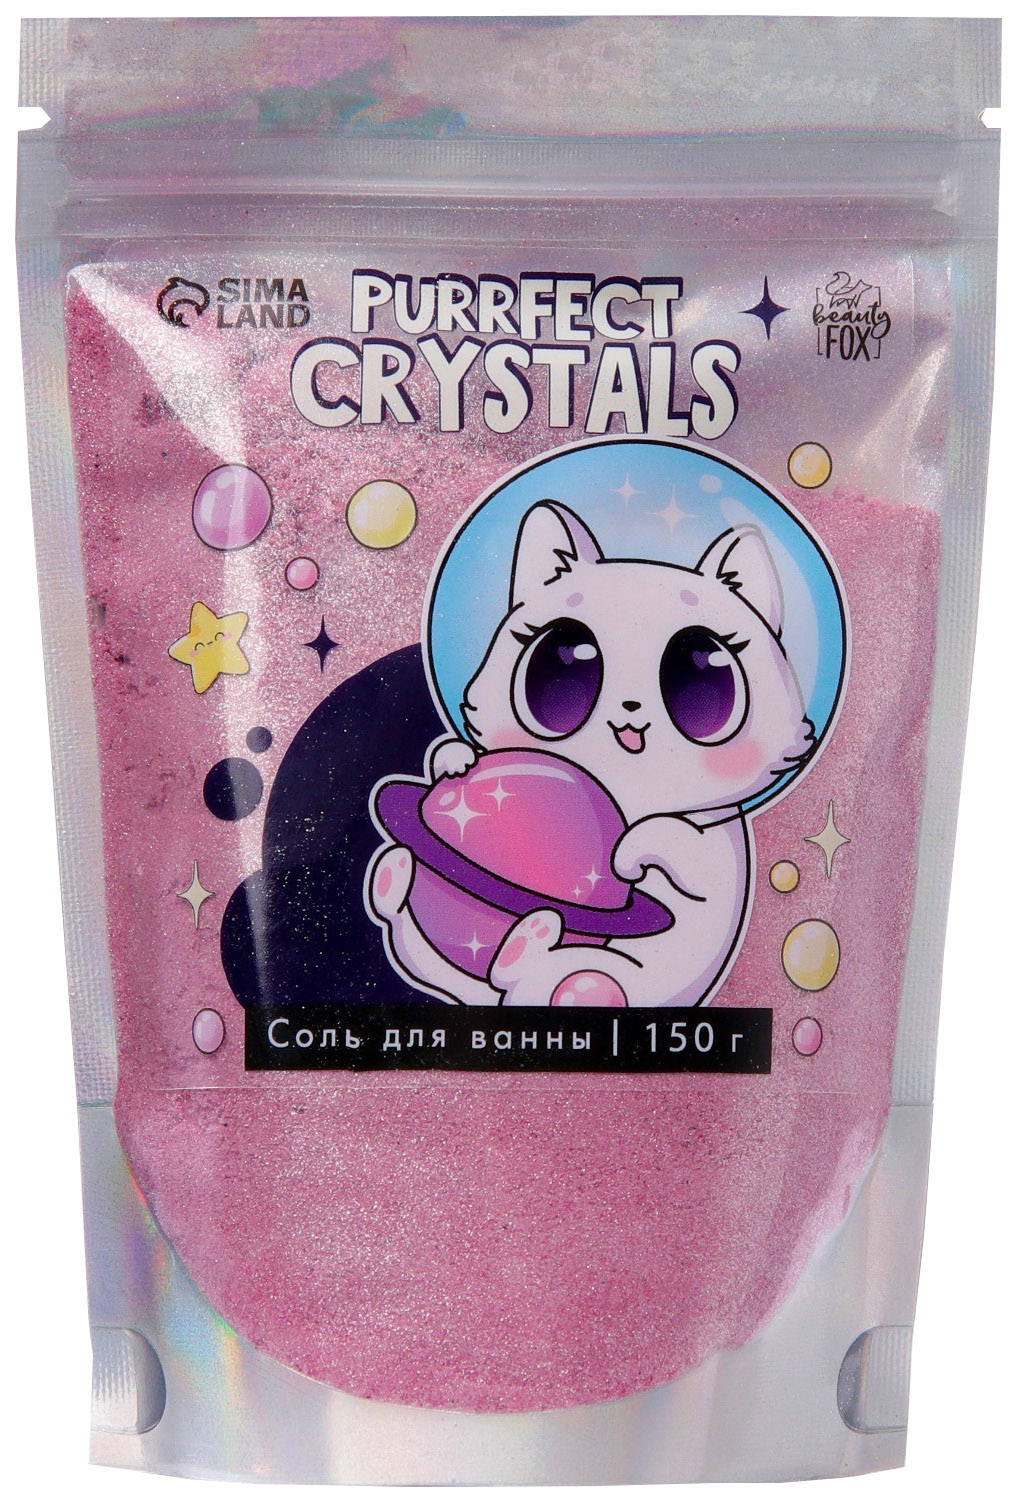 Соль для ванны-шиммер Purrfect, 150 г 4791195 yummmy розовый магический шиммер для ванны